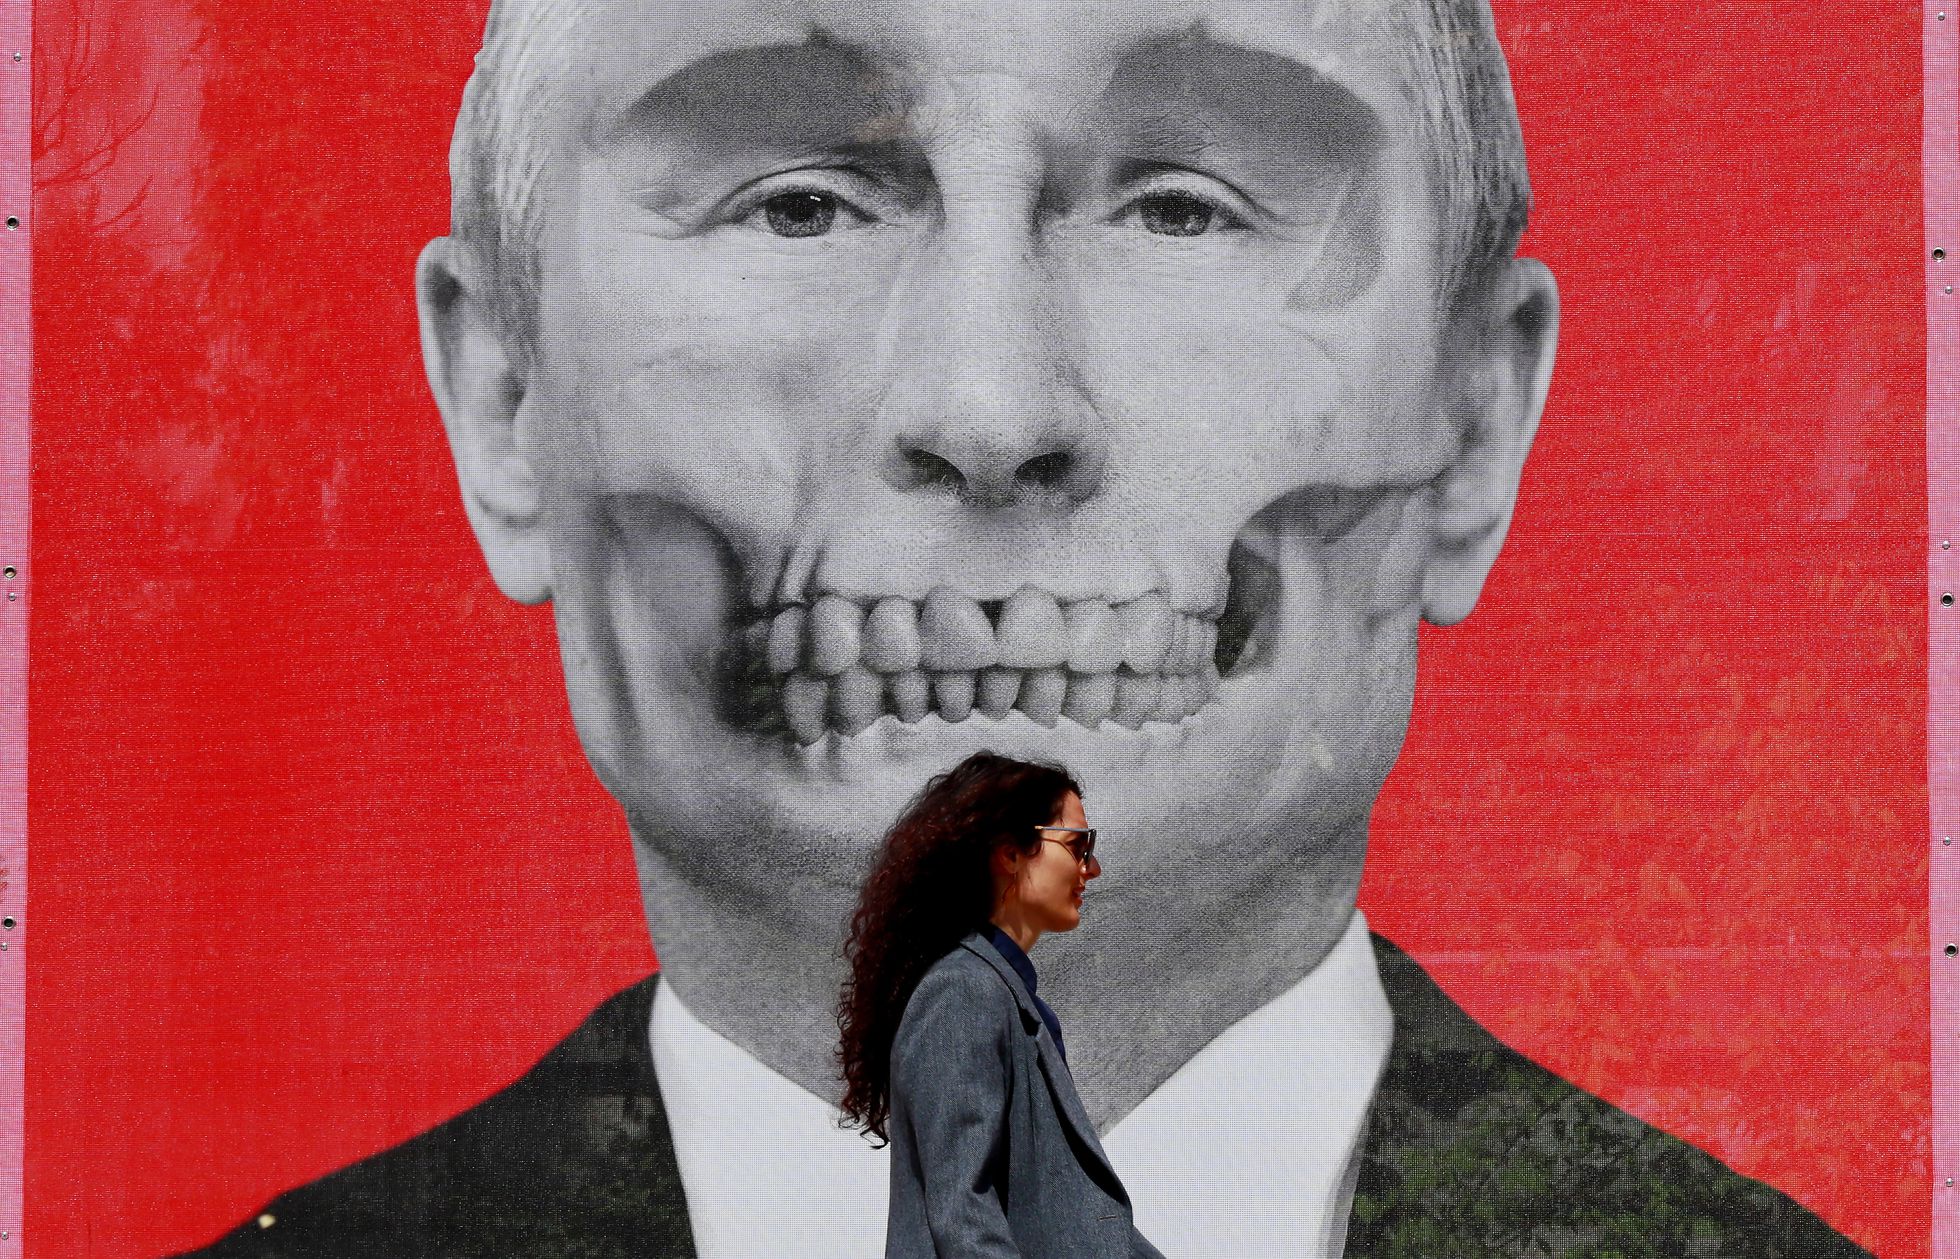 El País: La invasión de Putin en Ucrania entró en una espiral internacional de consecuencias imprevisibles